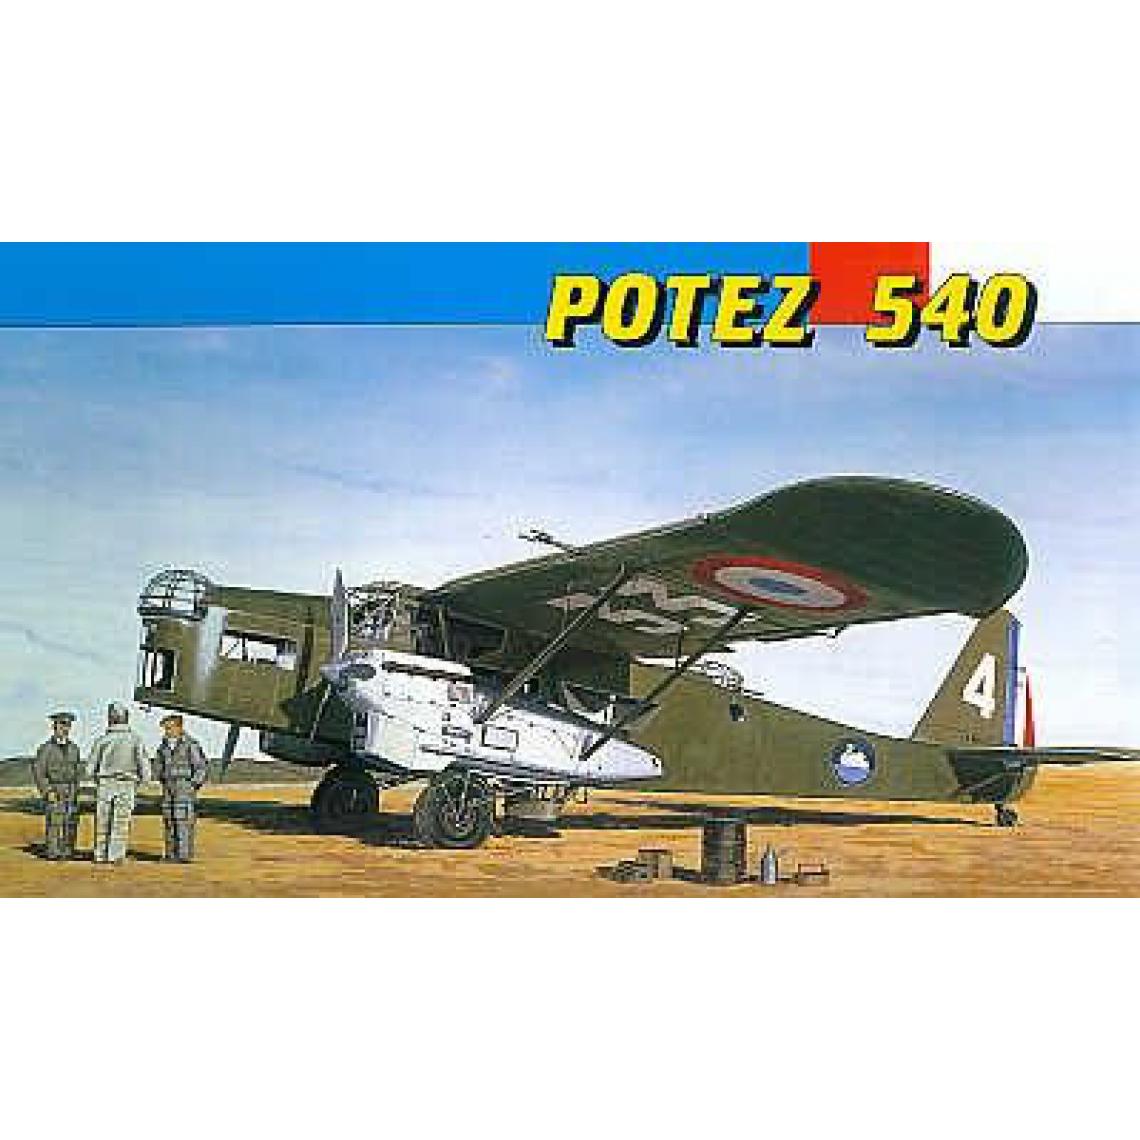 Smer - Potez 540 - Accessoires maquettes